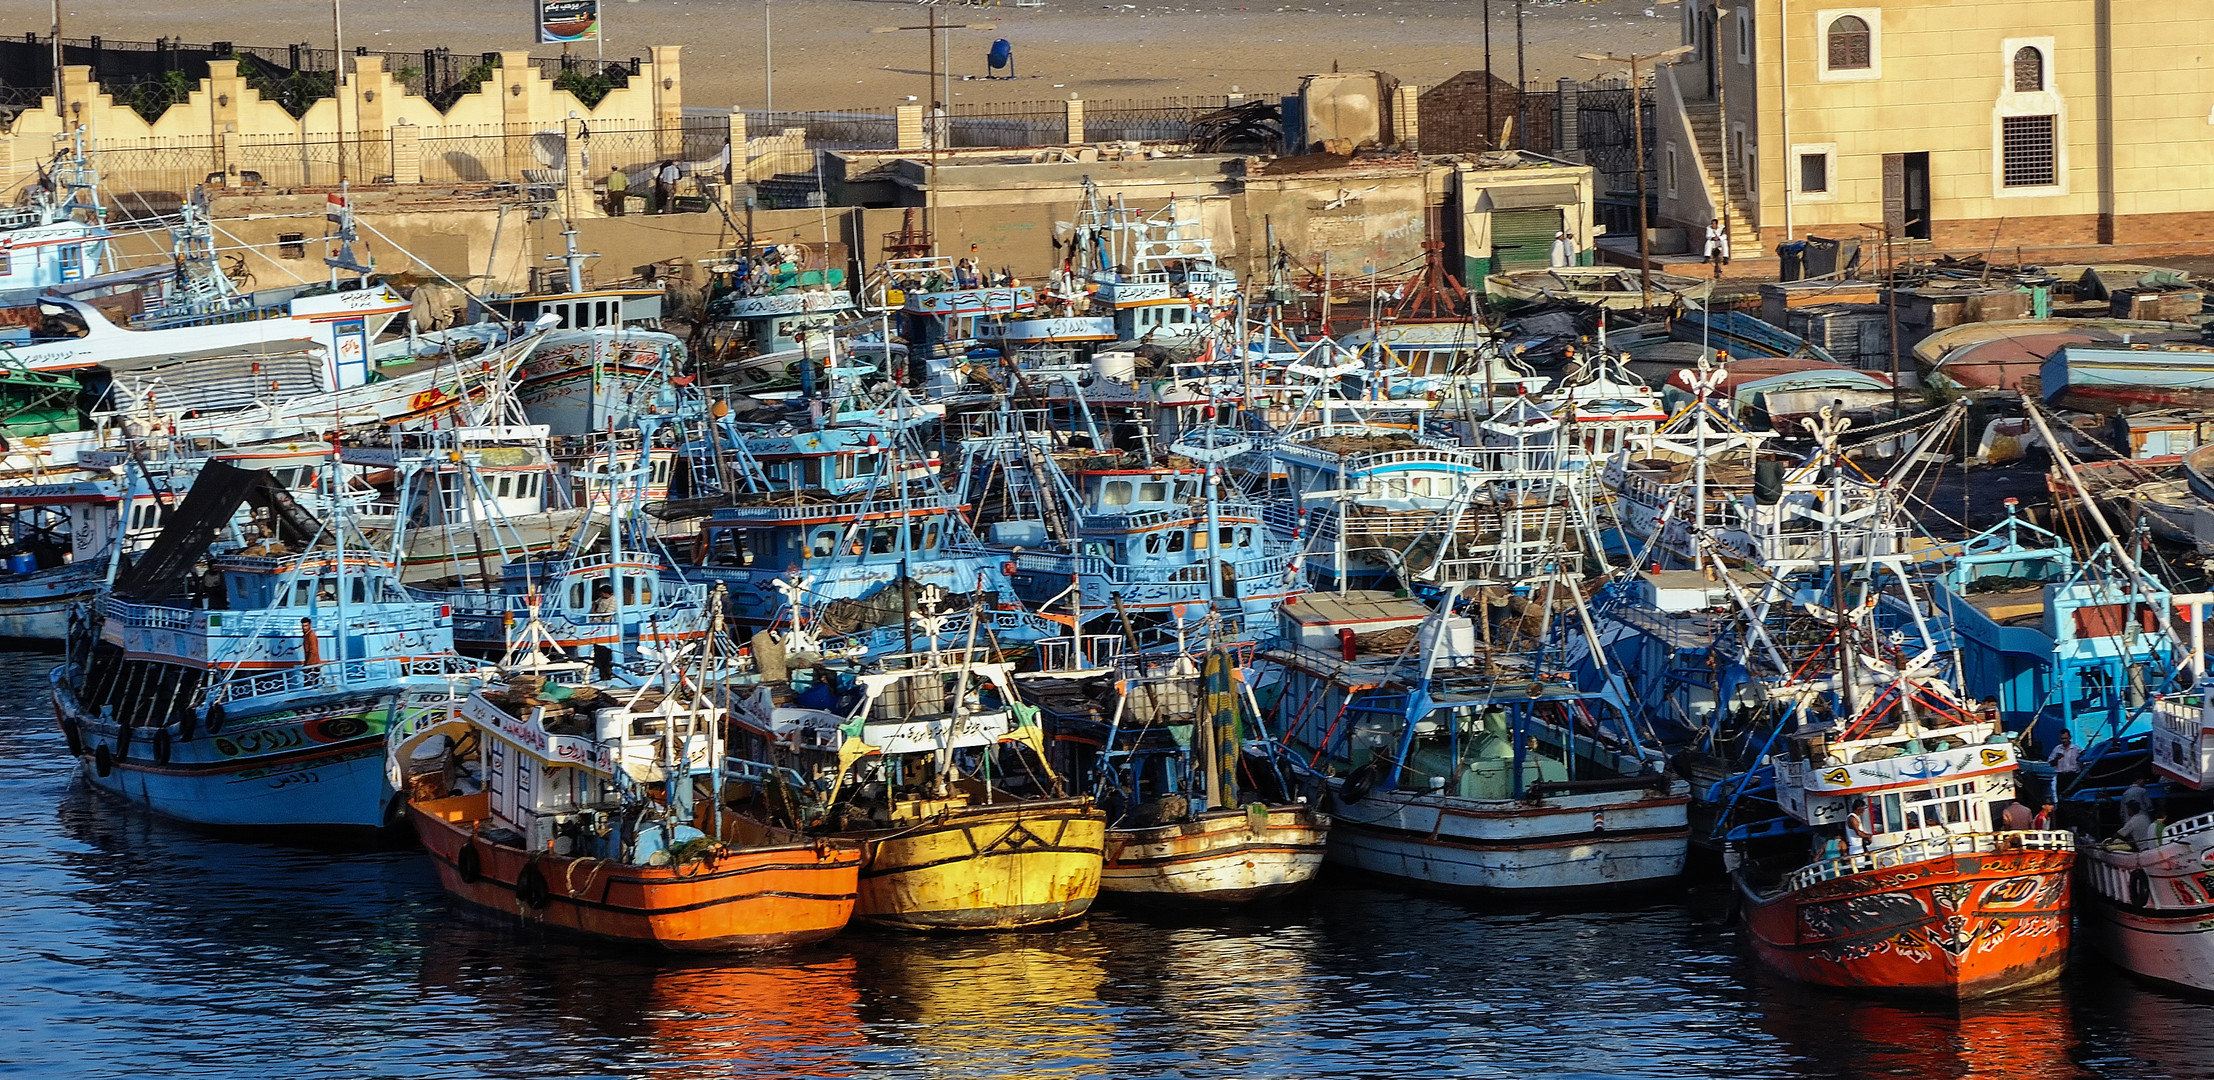 Morgenstimmung im Fischereihafen von Suez